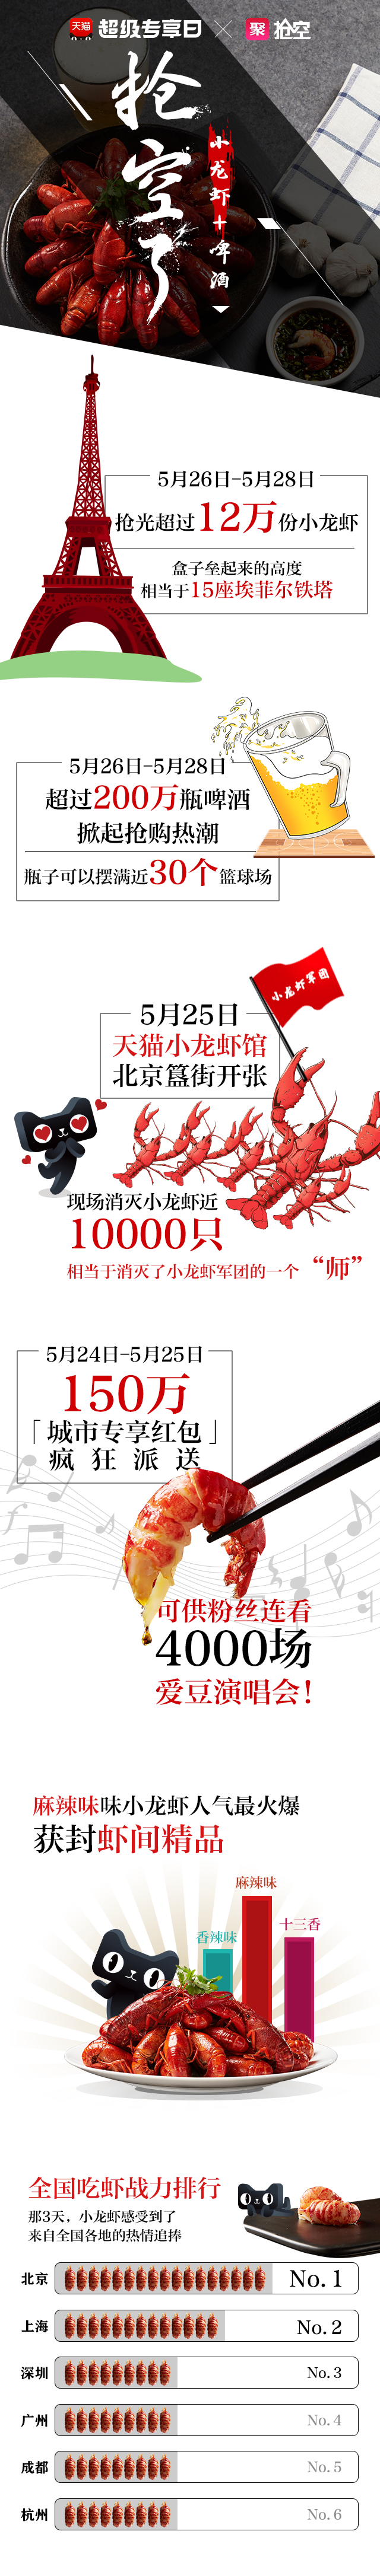 12万份小龙虾三天被抢空 天猫开启新零售之路